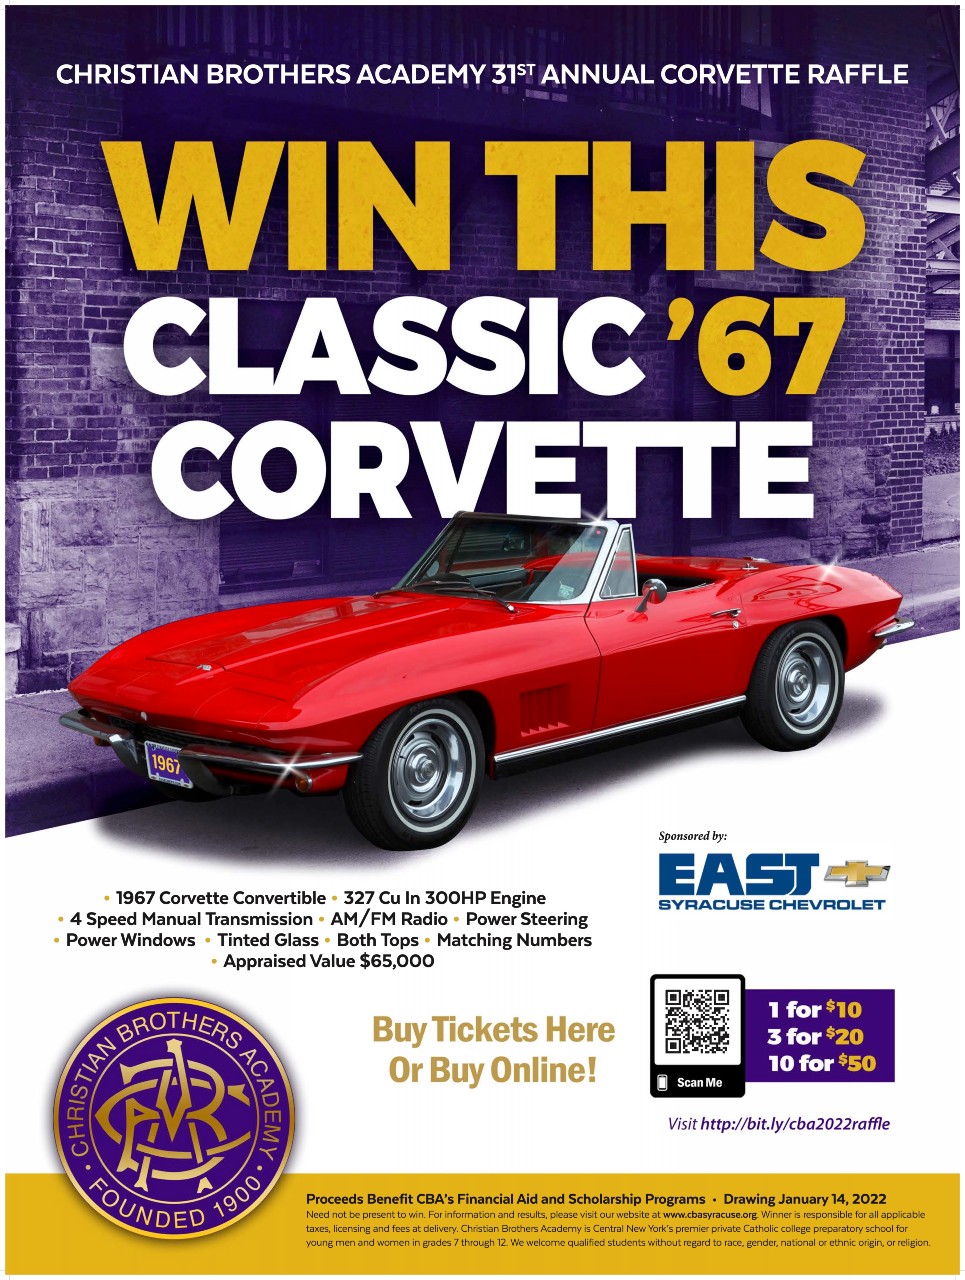 2021 Corvette Raffle near syracuse ny image of poster